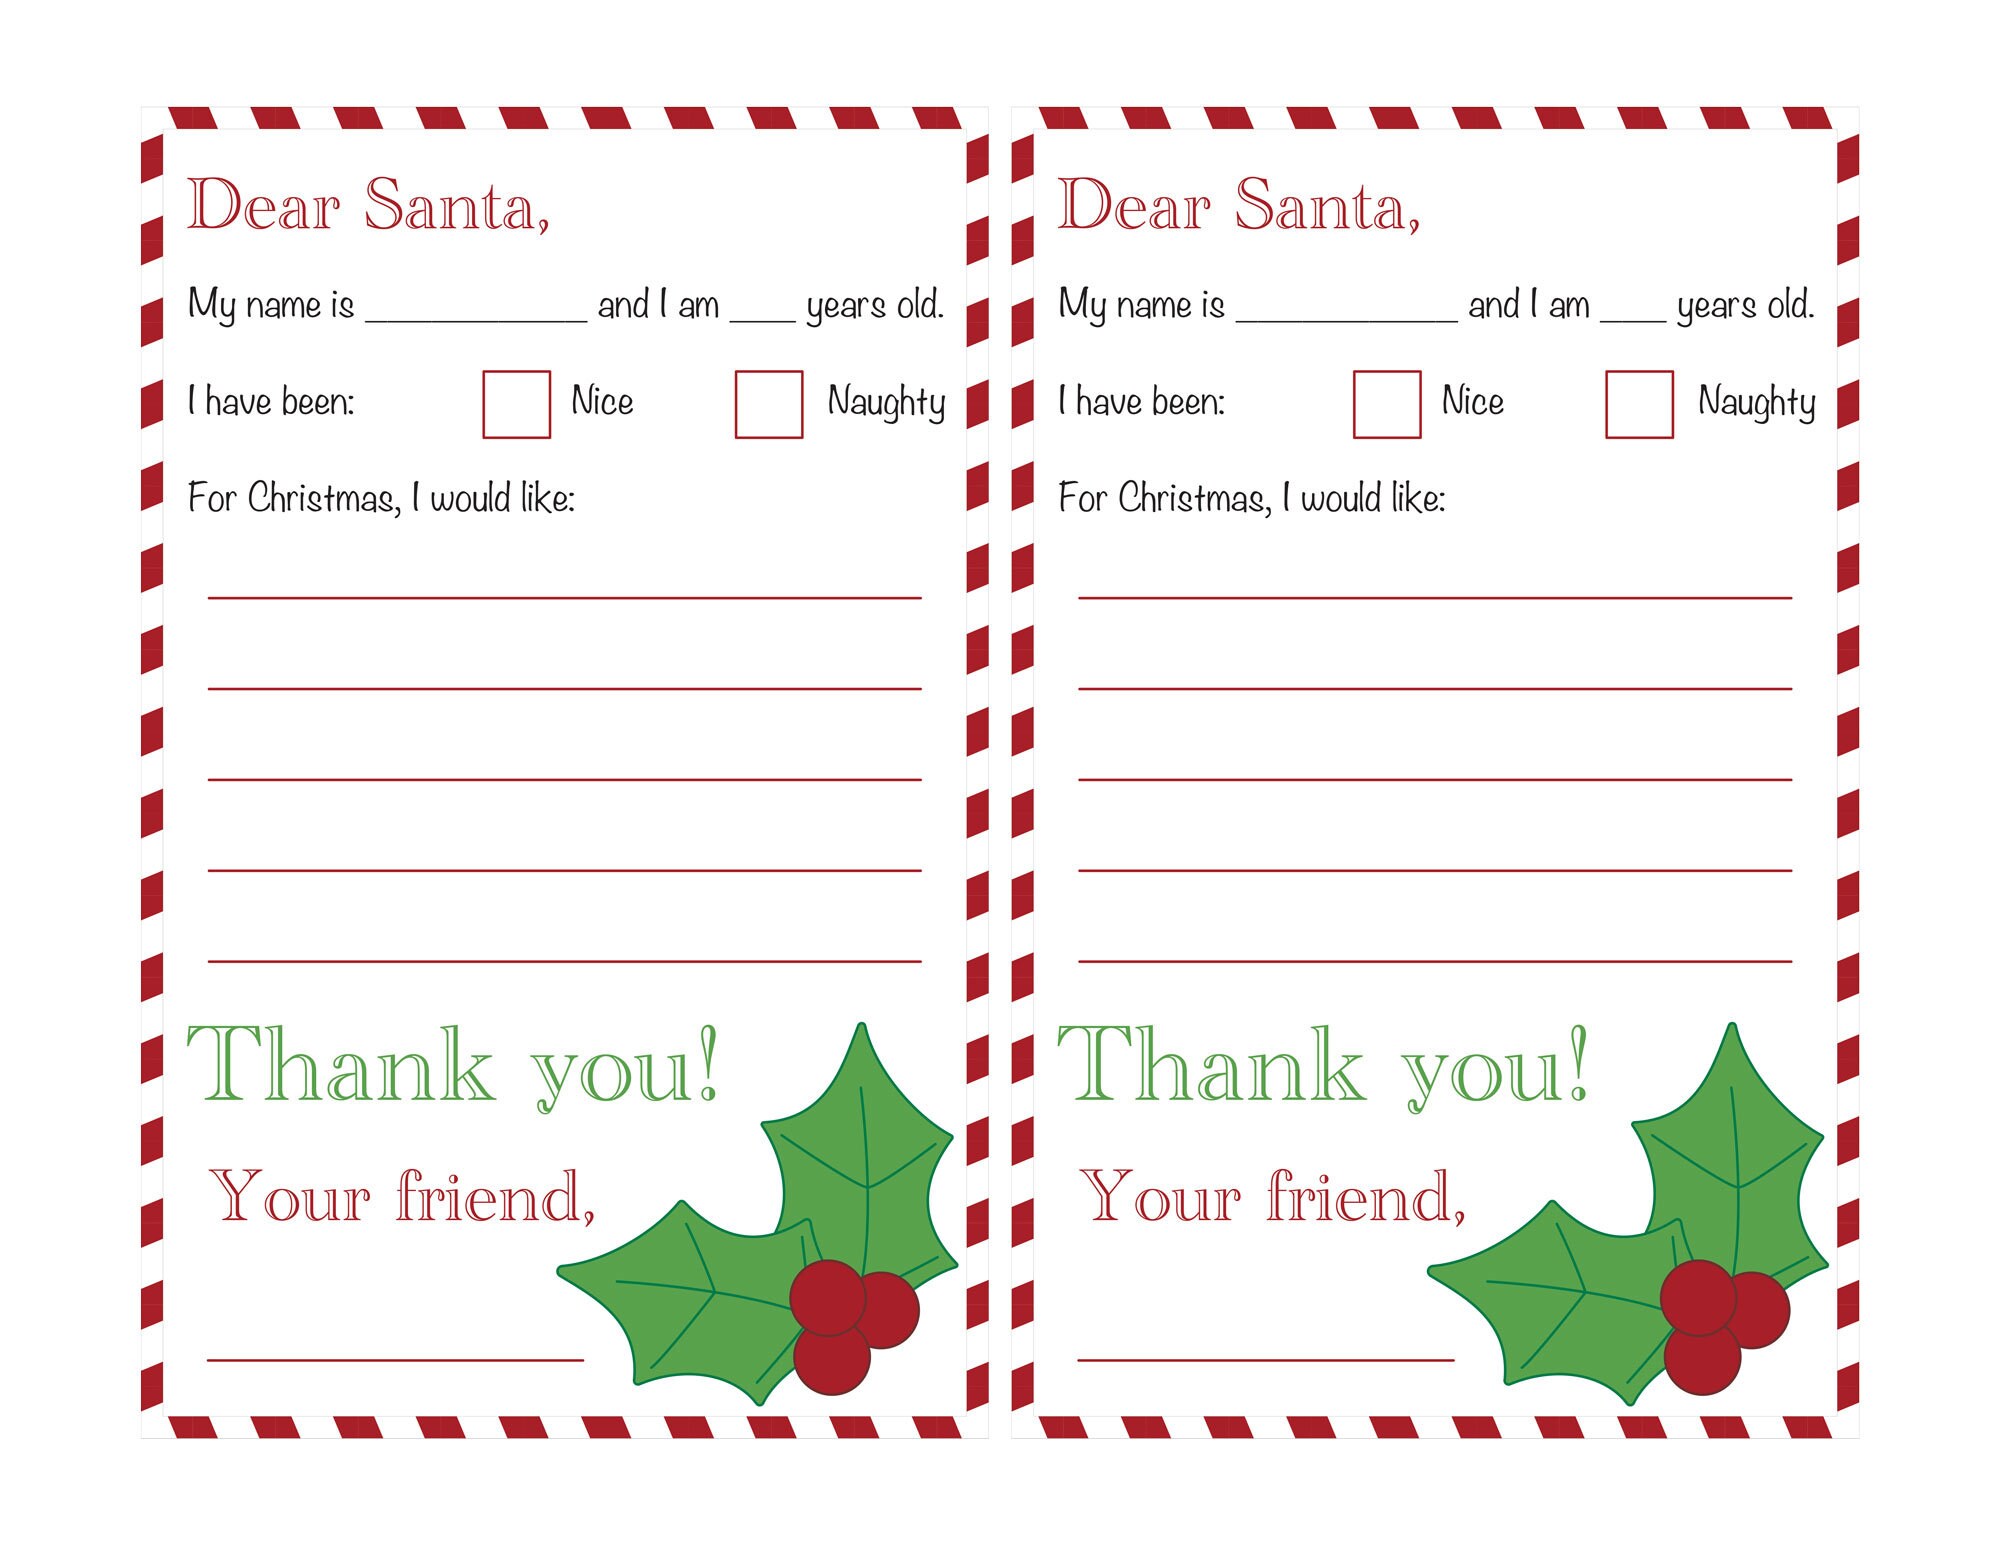 Buy Letter to Santa Felt Stocking Kit From Merrystockings Online